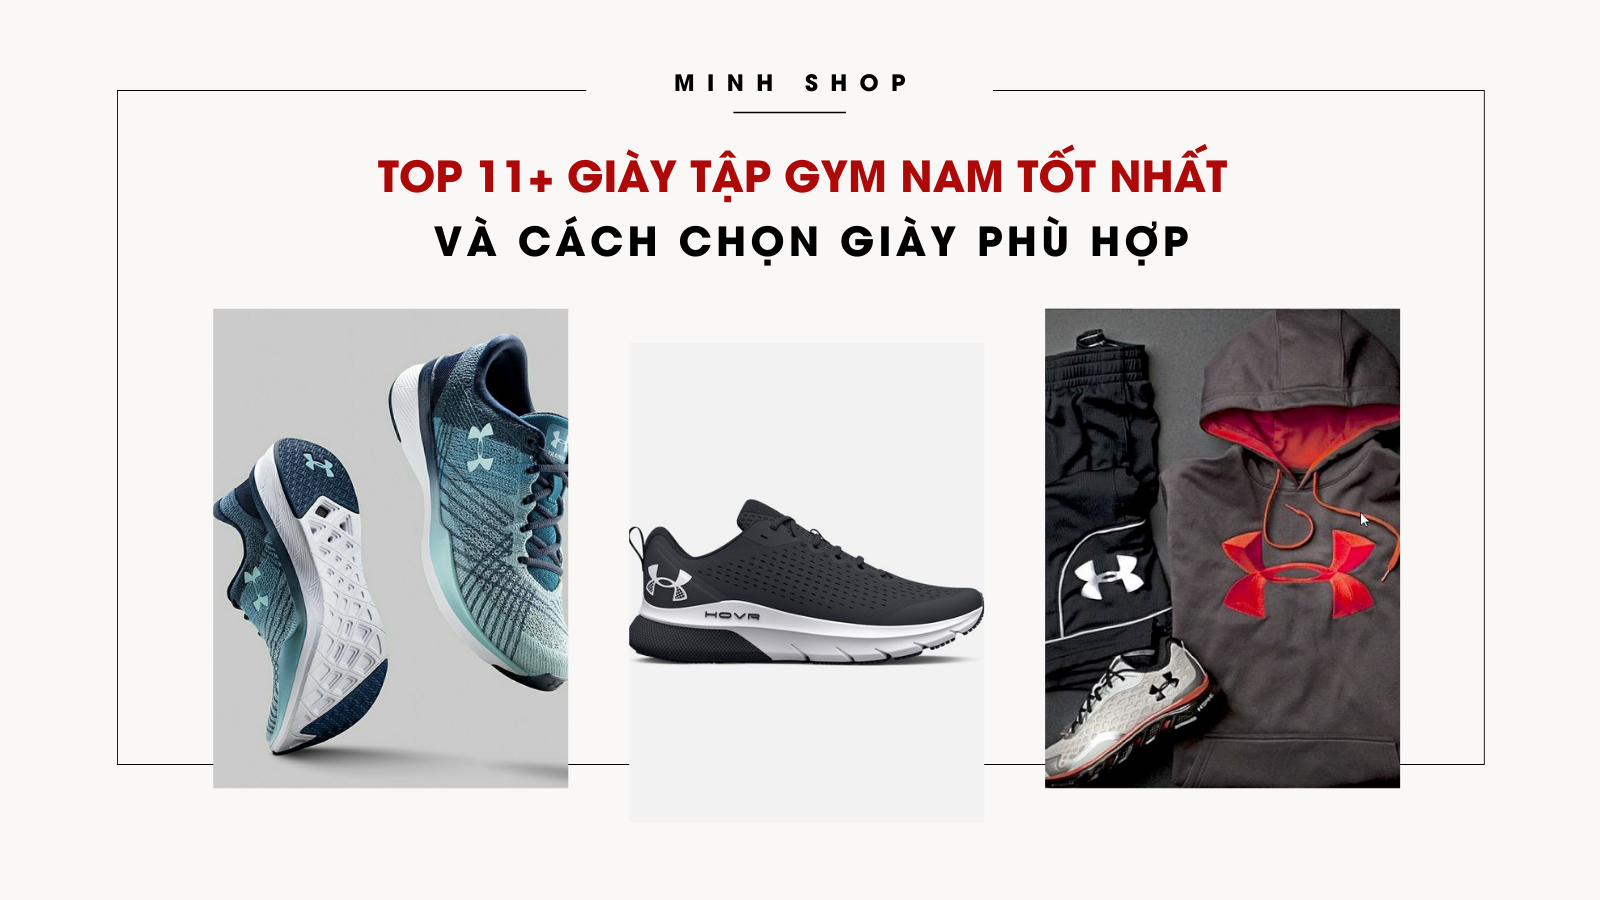 Minhshop.vn - Top 11+ giày tập gym nam tốt nhất và cách chọn giày phù hợp